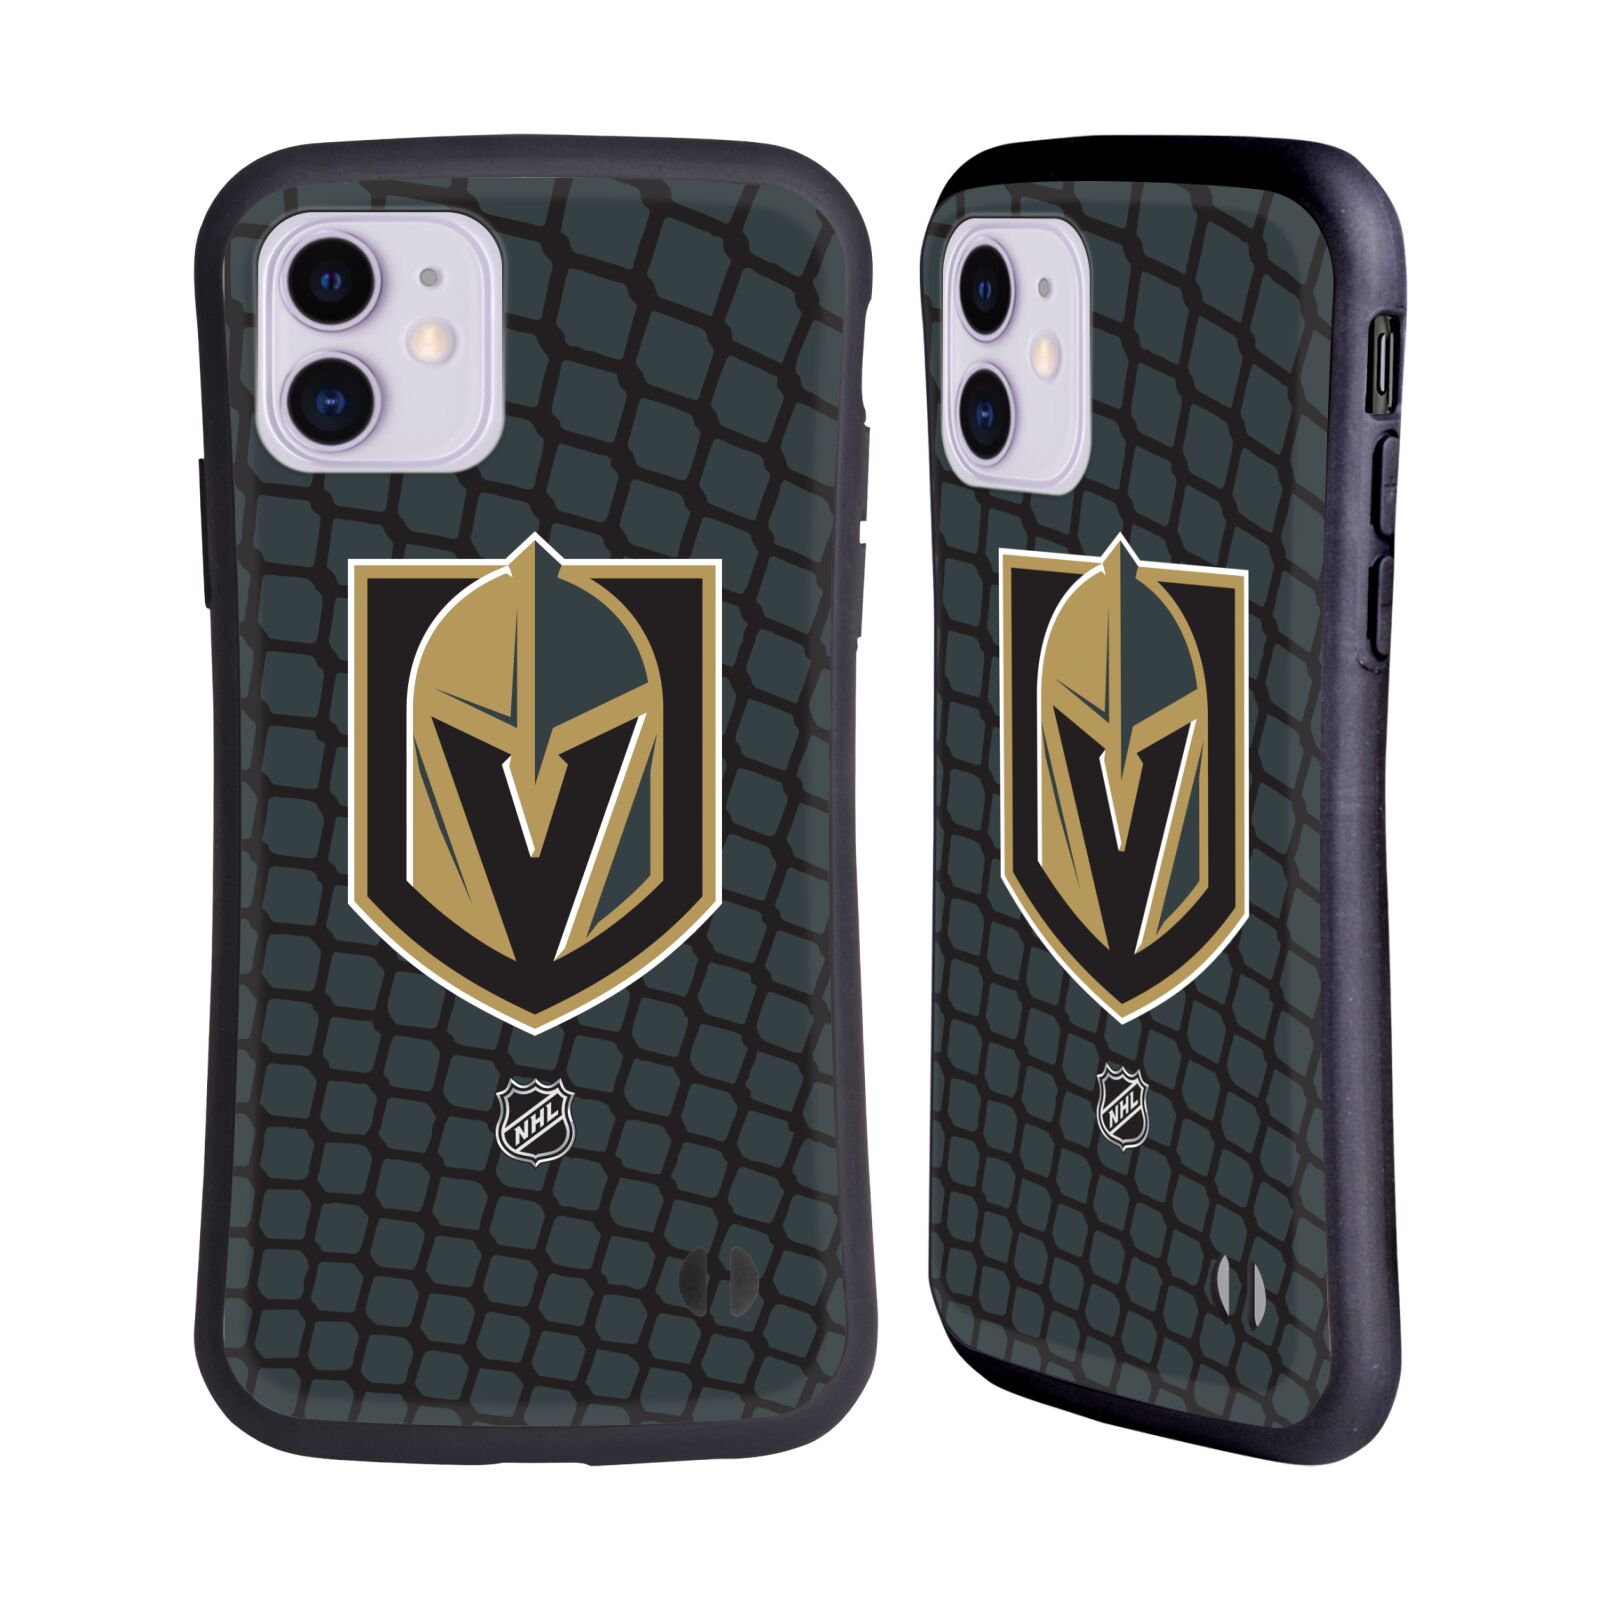 Obal na mobil Apple iPhone 11 - HEAD CASE - NHL - Branková síť Las Vegas Golden Knights